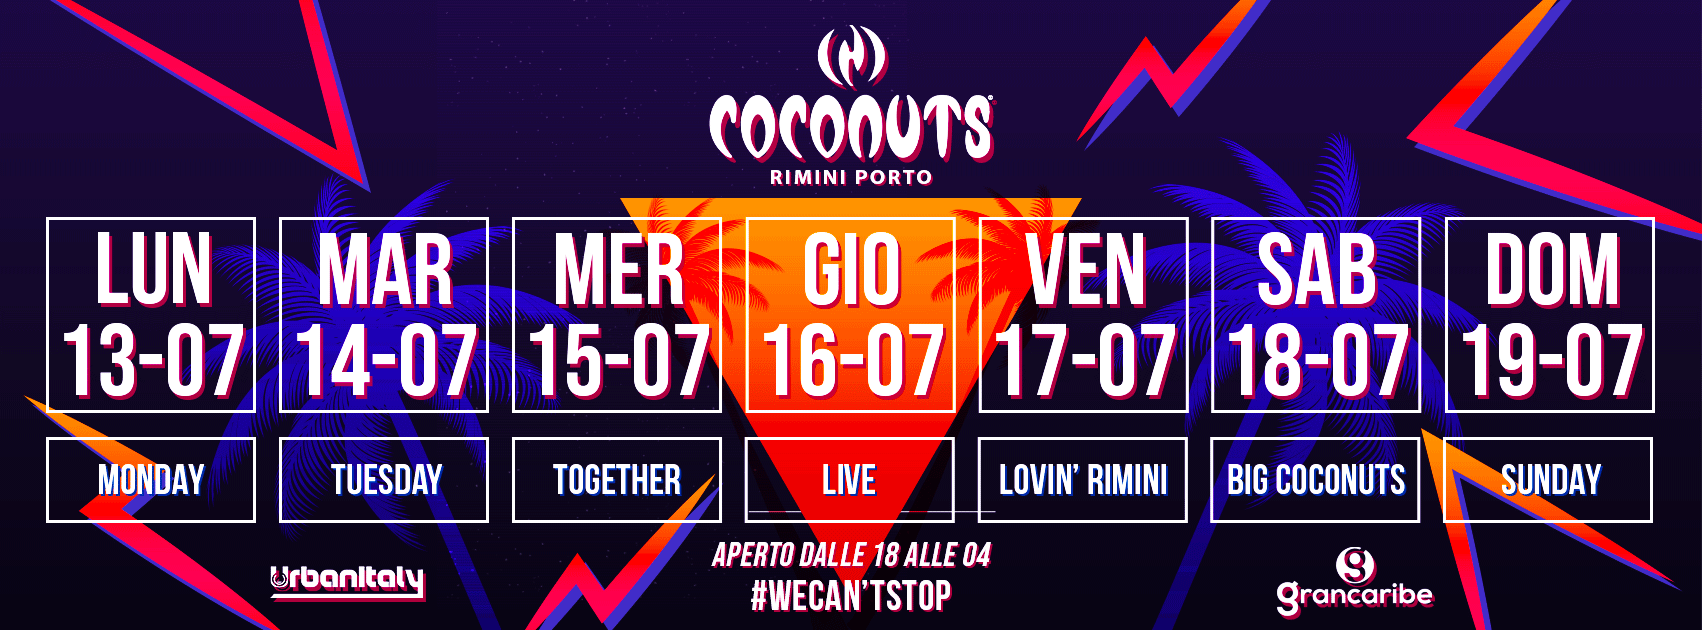 Djs Corrado Alunni e Mauro Catalini alla Discoteca Coconuts di Rimini